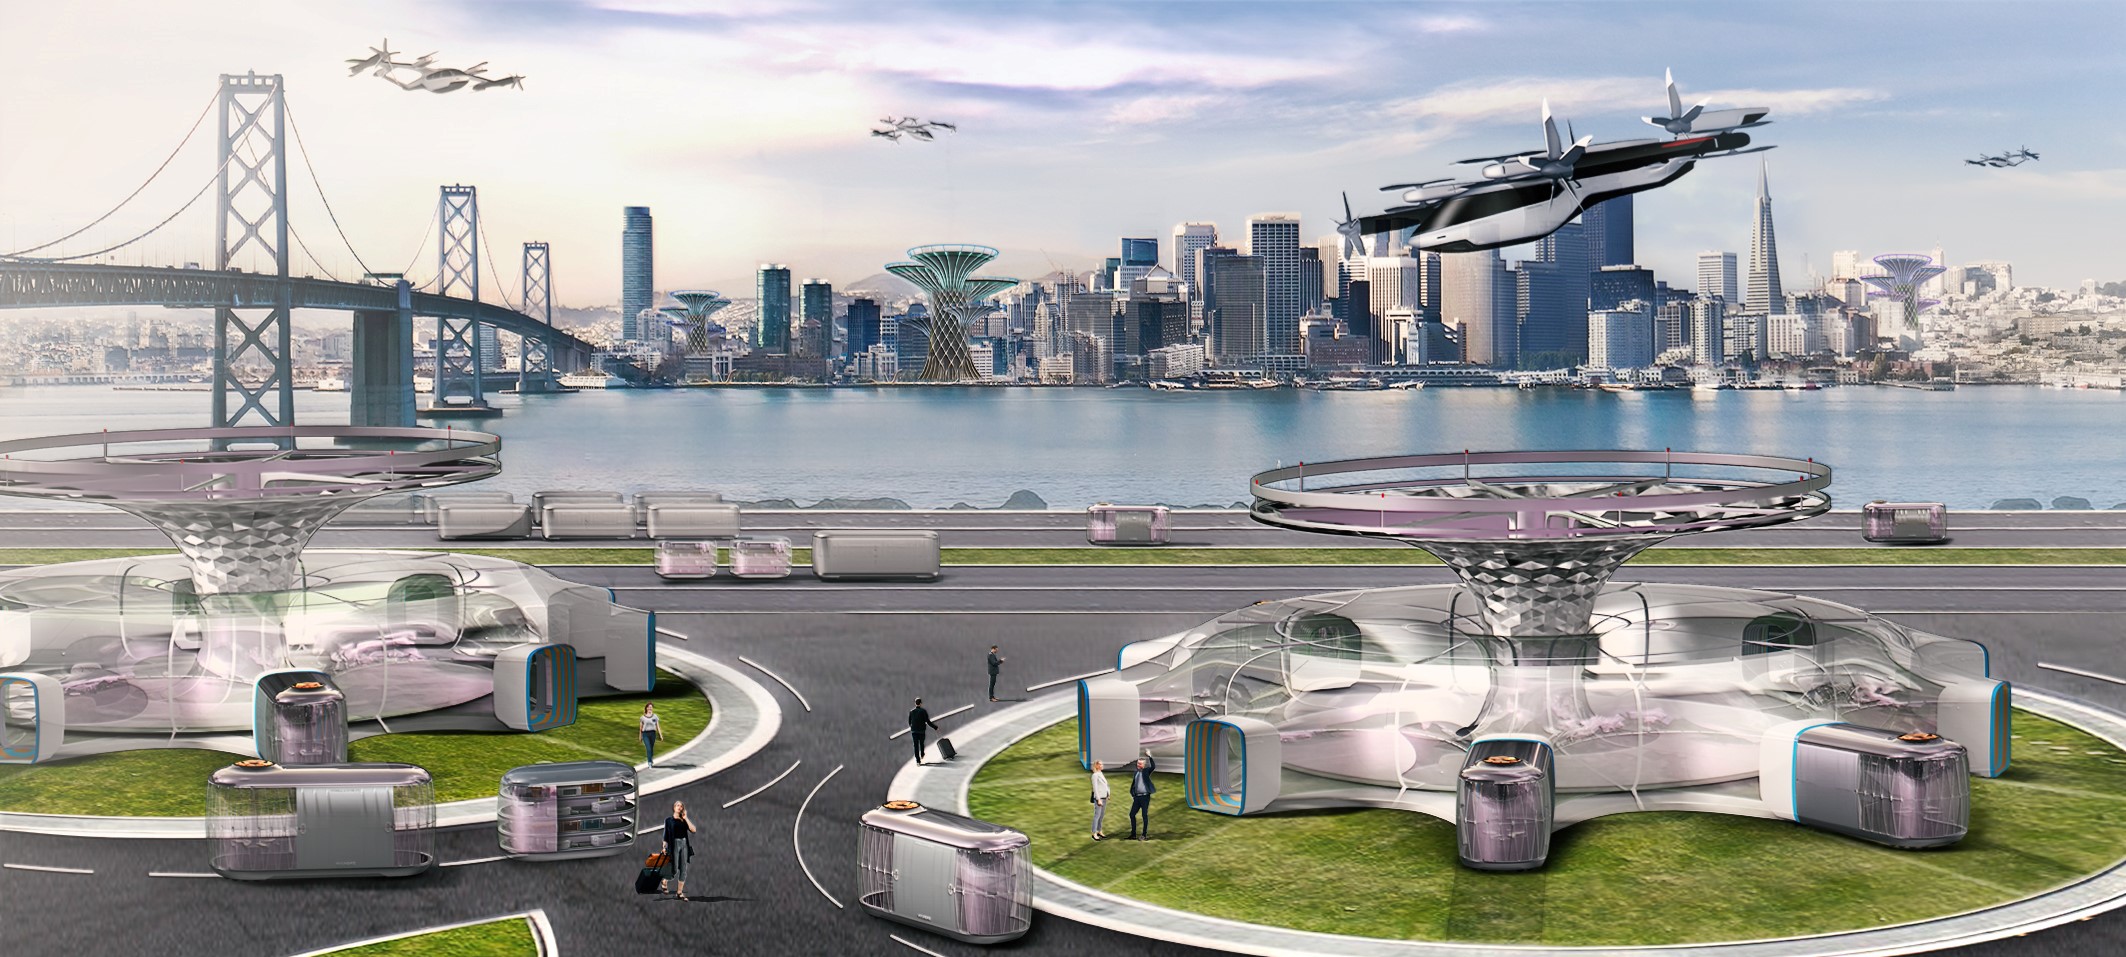 Hyundai Motor поделится своим видением городов будущего на выставке CES 2020 в США